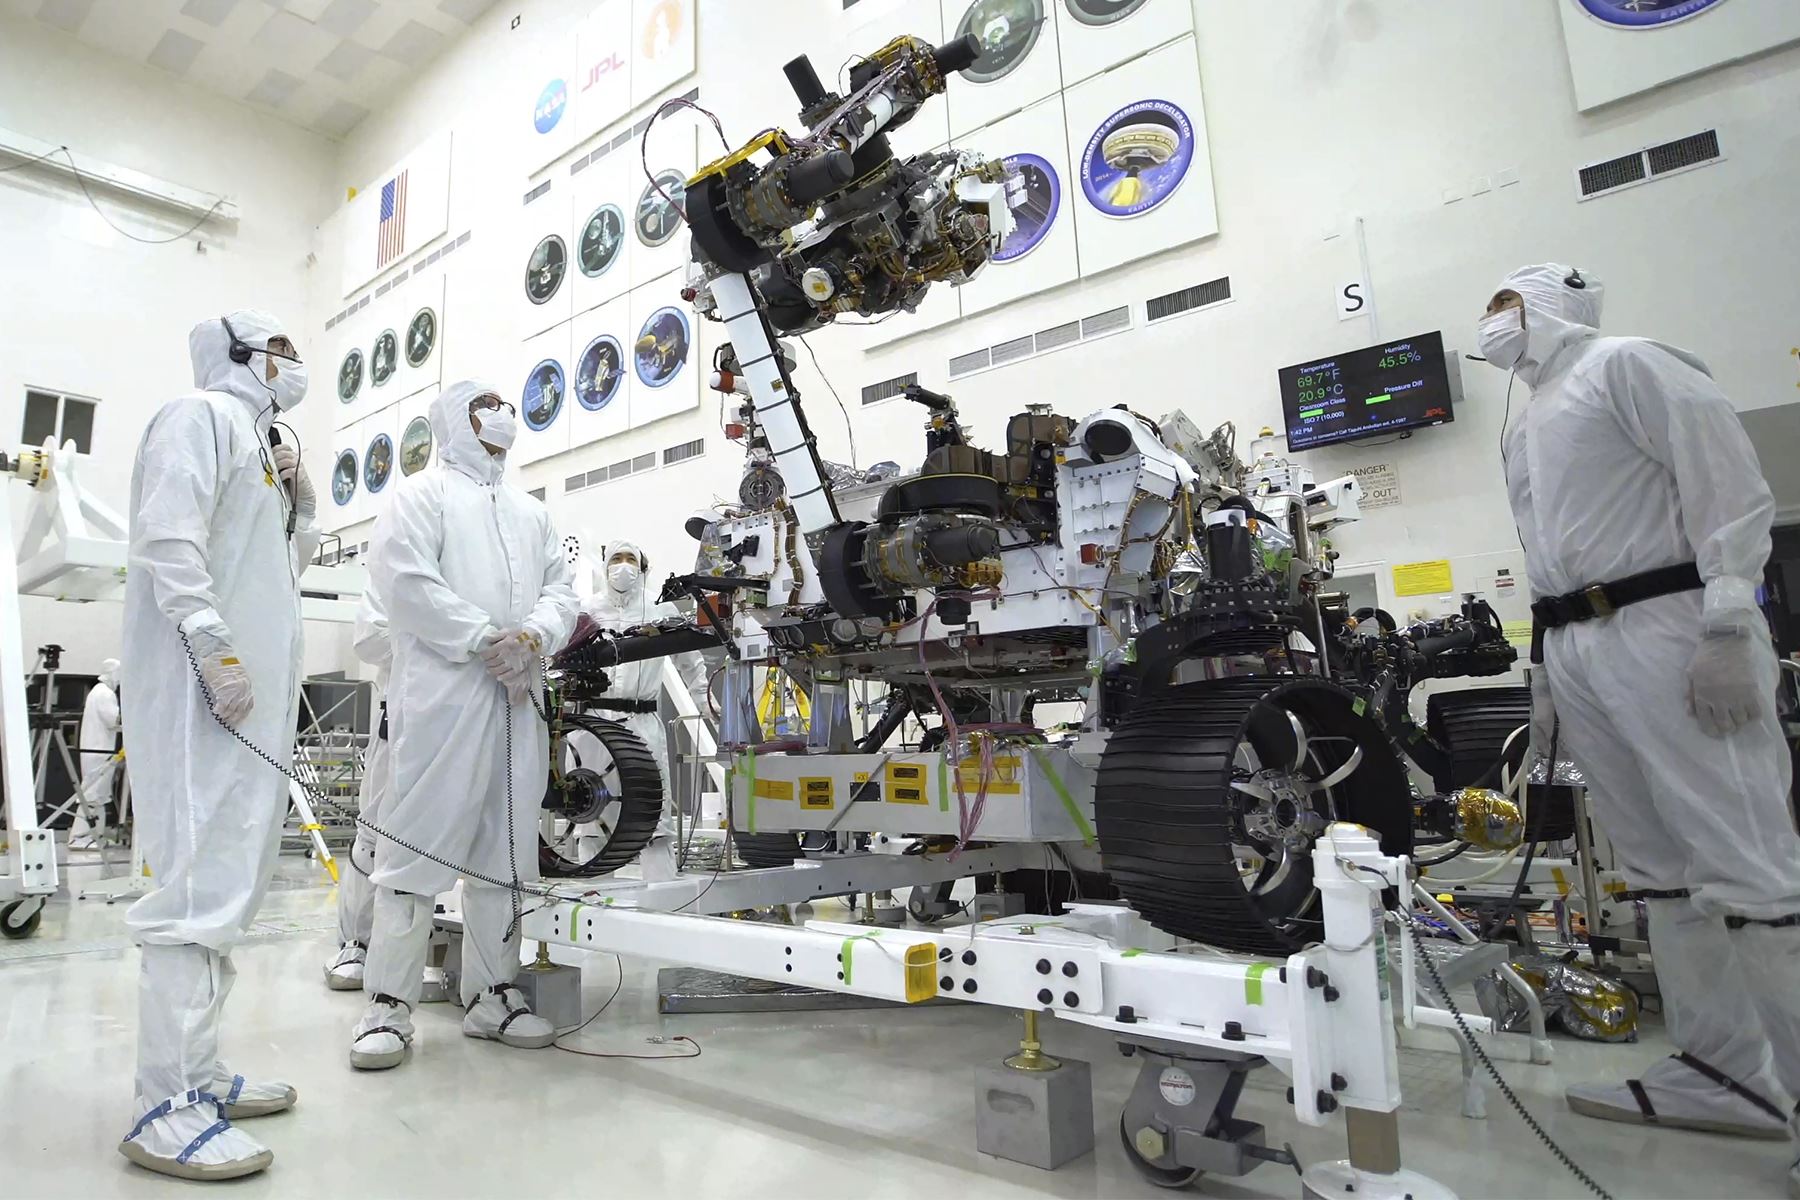 El rover Perseverance Mars 2020 de la NASA, que llegará al Planeta Rojo en febrero de 2021.Foto: AFP/NASA/JPL-CALTECH